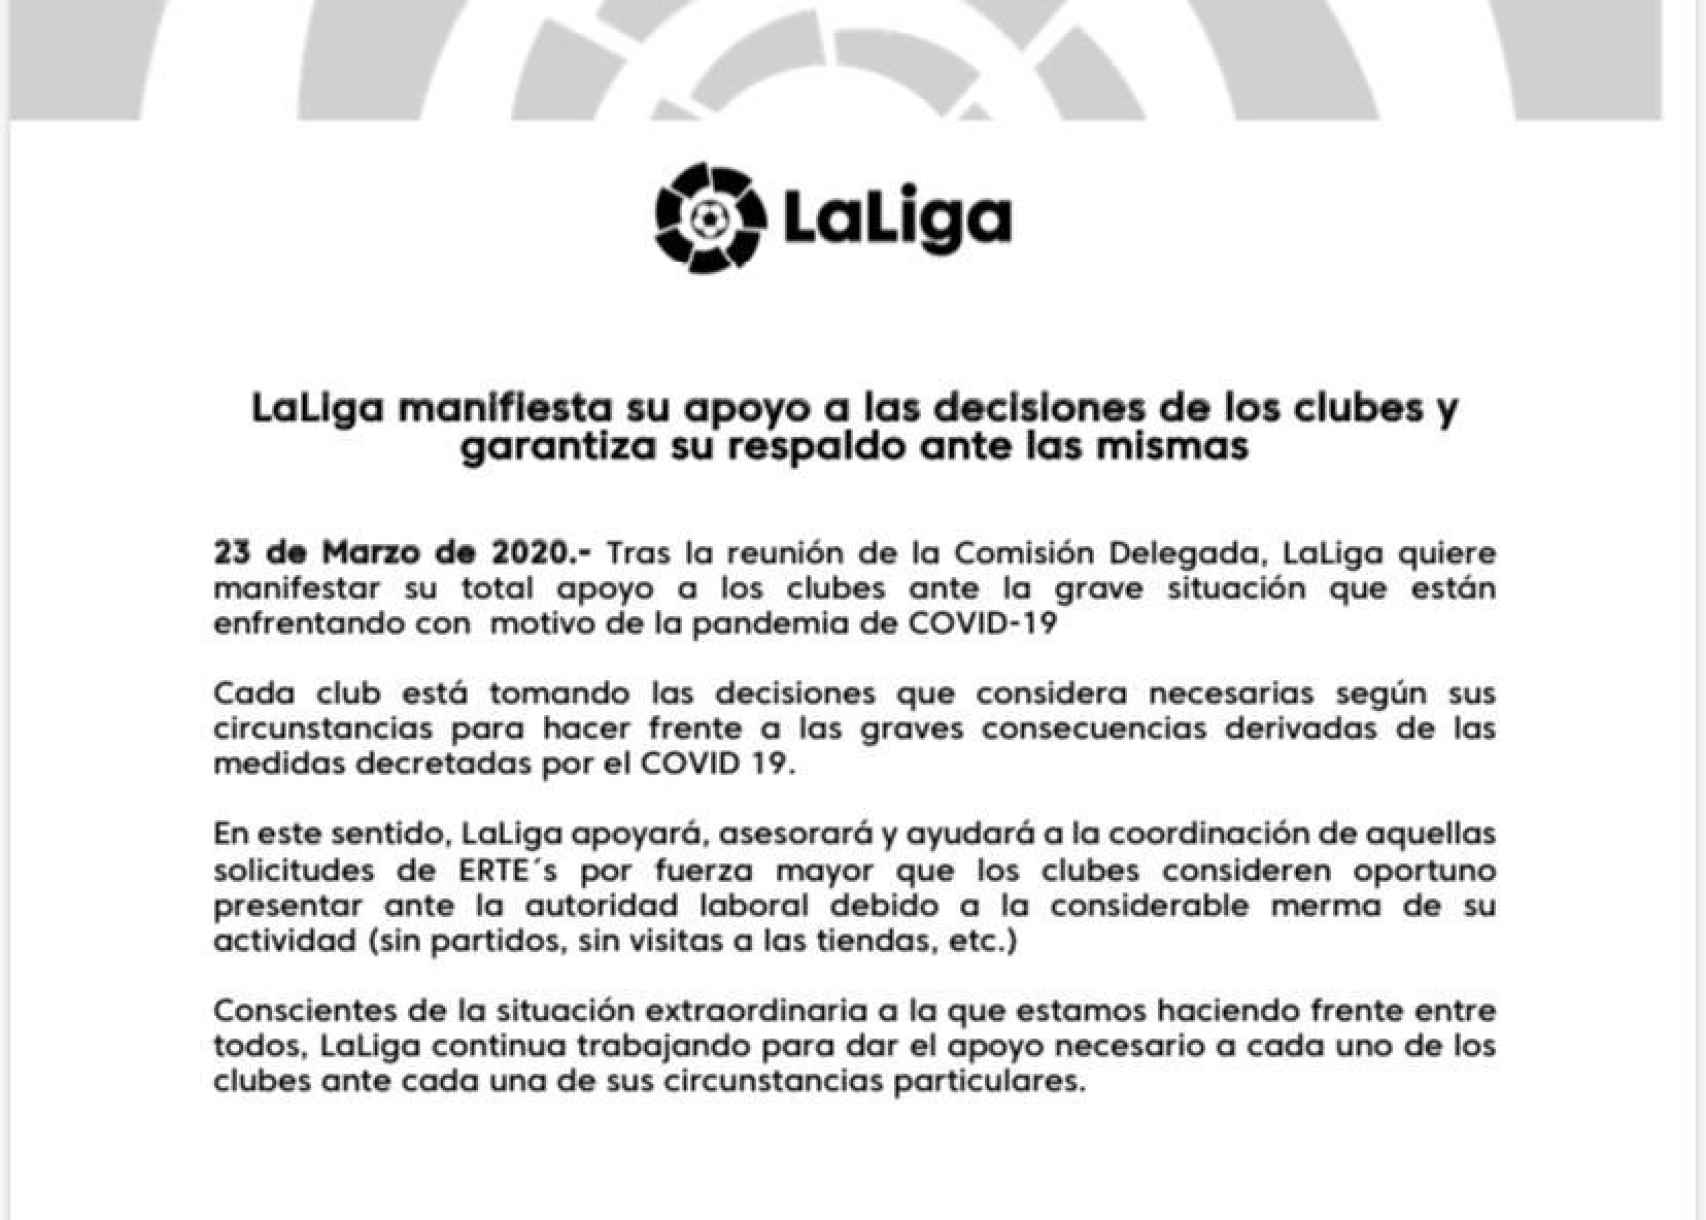 El comunicado oficial de LaLiga mostrando el apoyo a que los clubes soliciten ERTEs